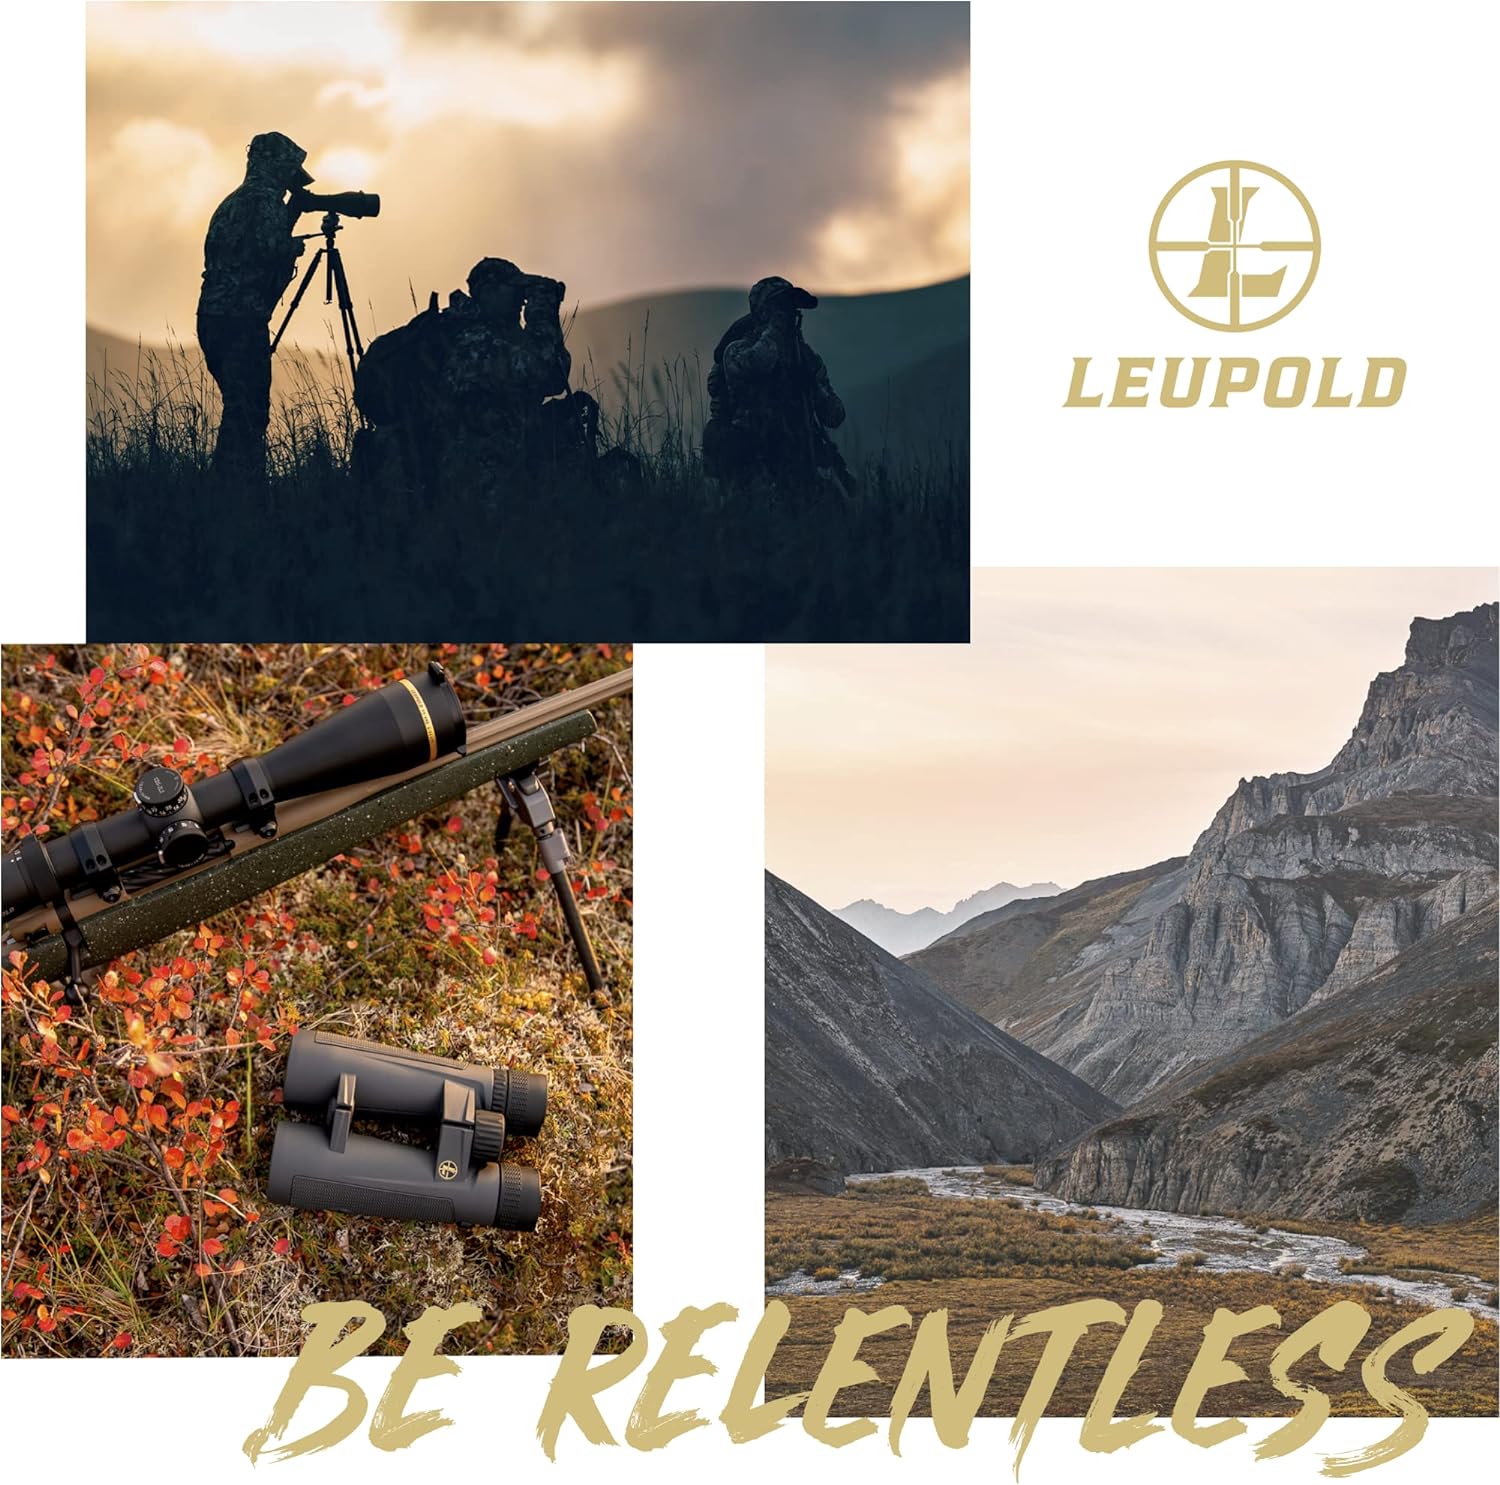 Leupold VX-5HD 4-20x52mm Side Focus Riflescope - Leupold VX-5HD 4-20x52mm Side Focus Riflescope Review